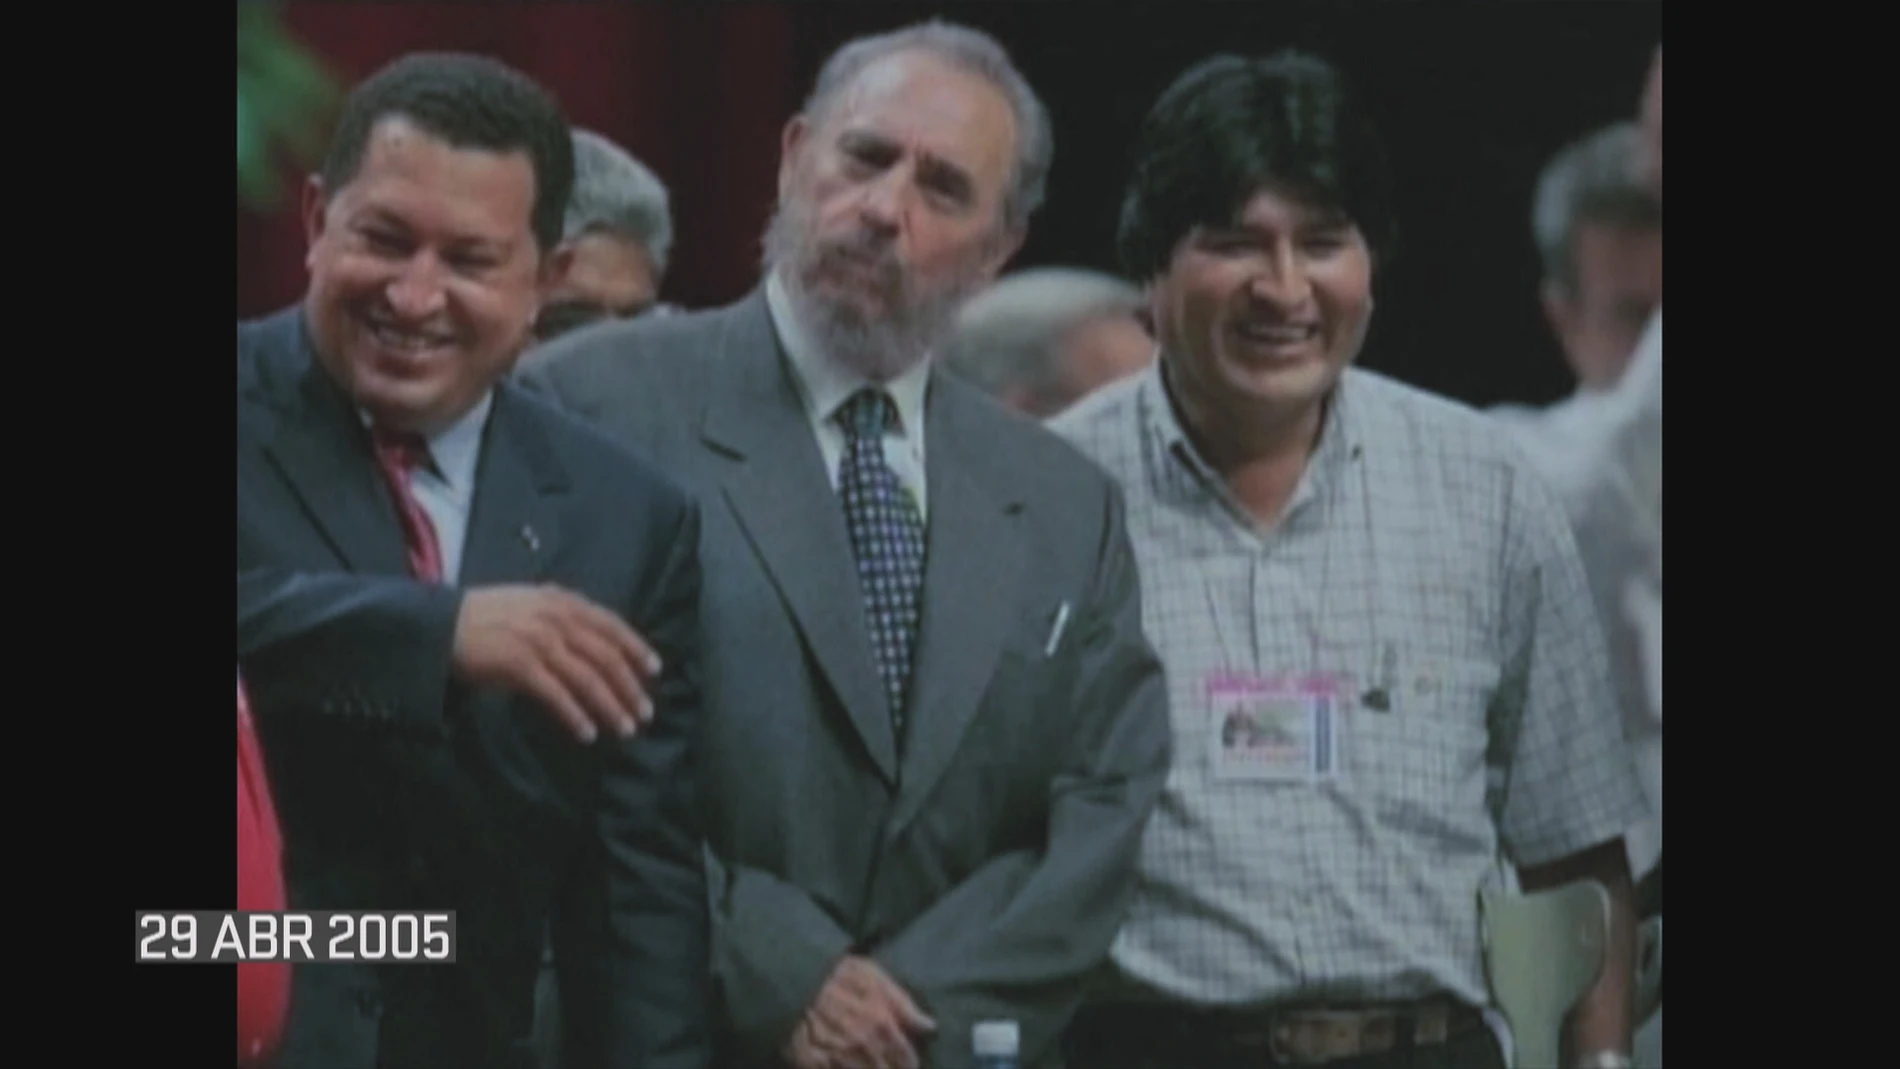 Hugo Chávez, Fidel Castro y Evo Morales